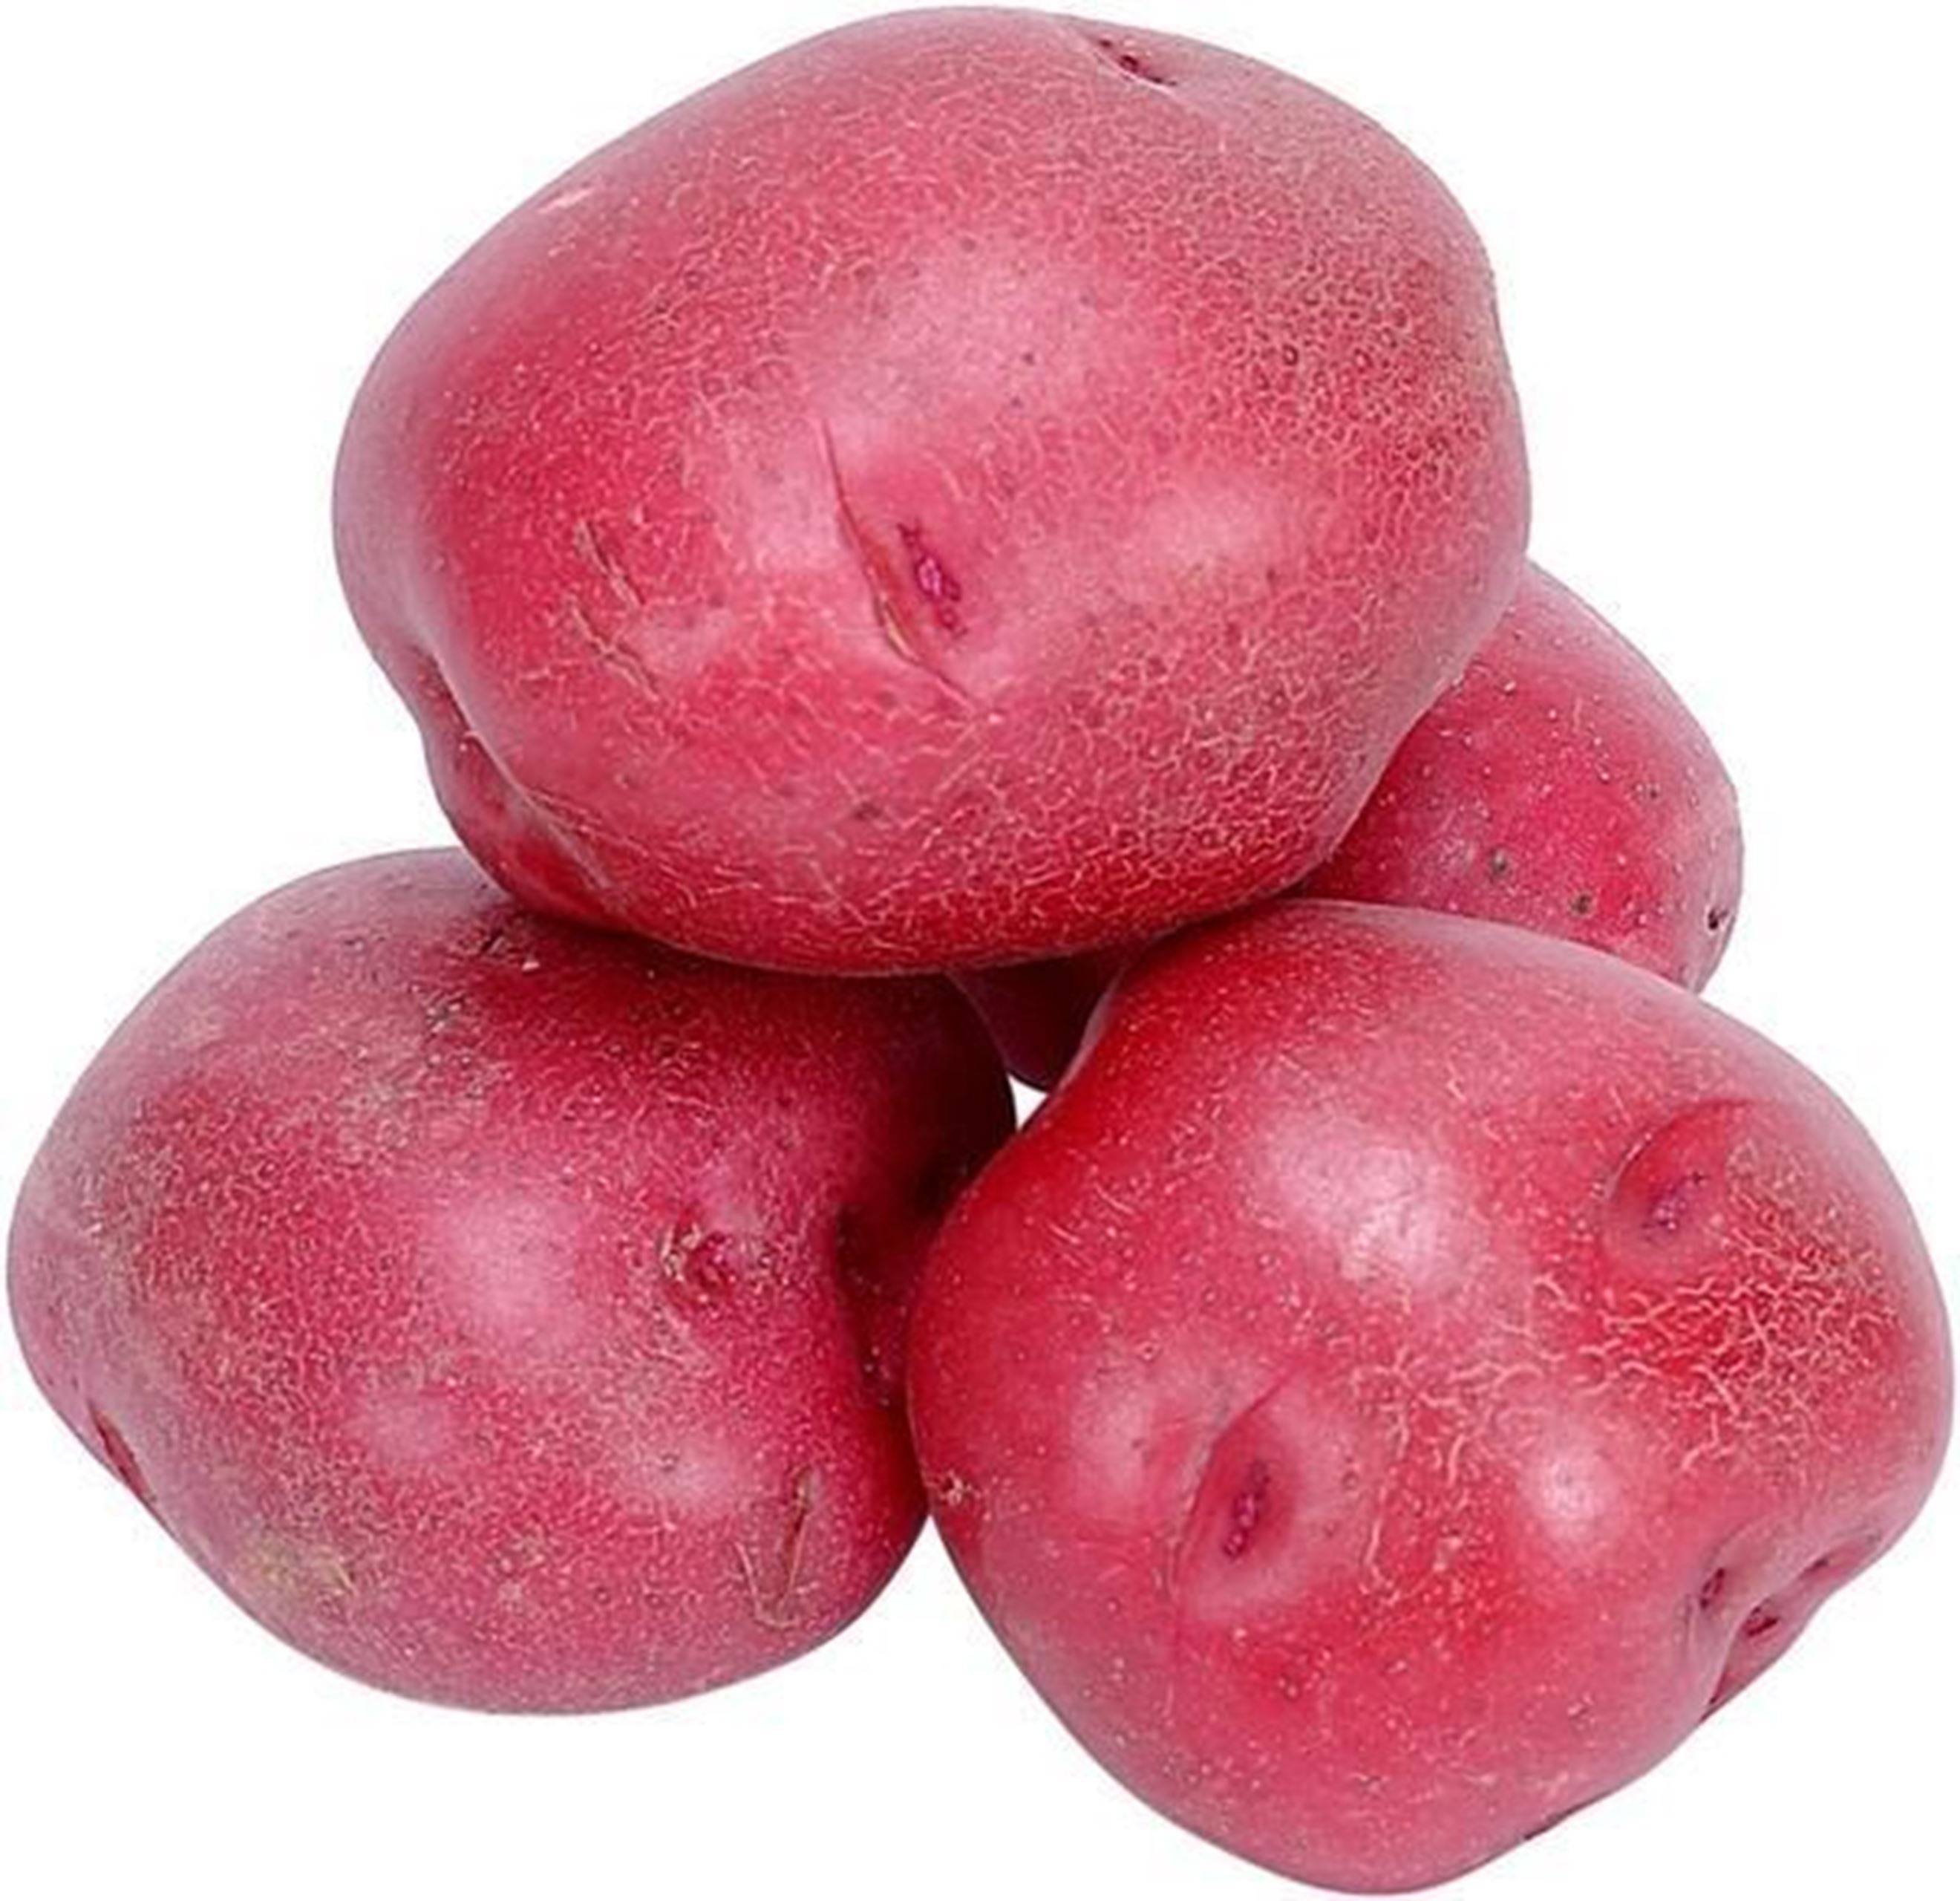 картофель крымская роза фото